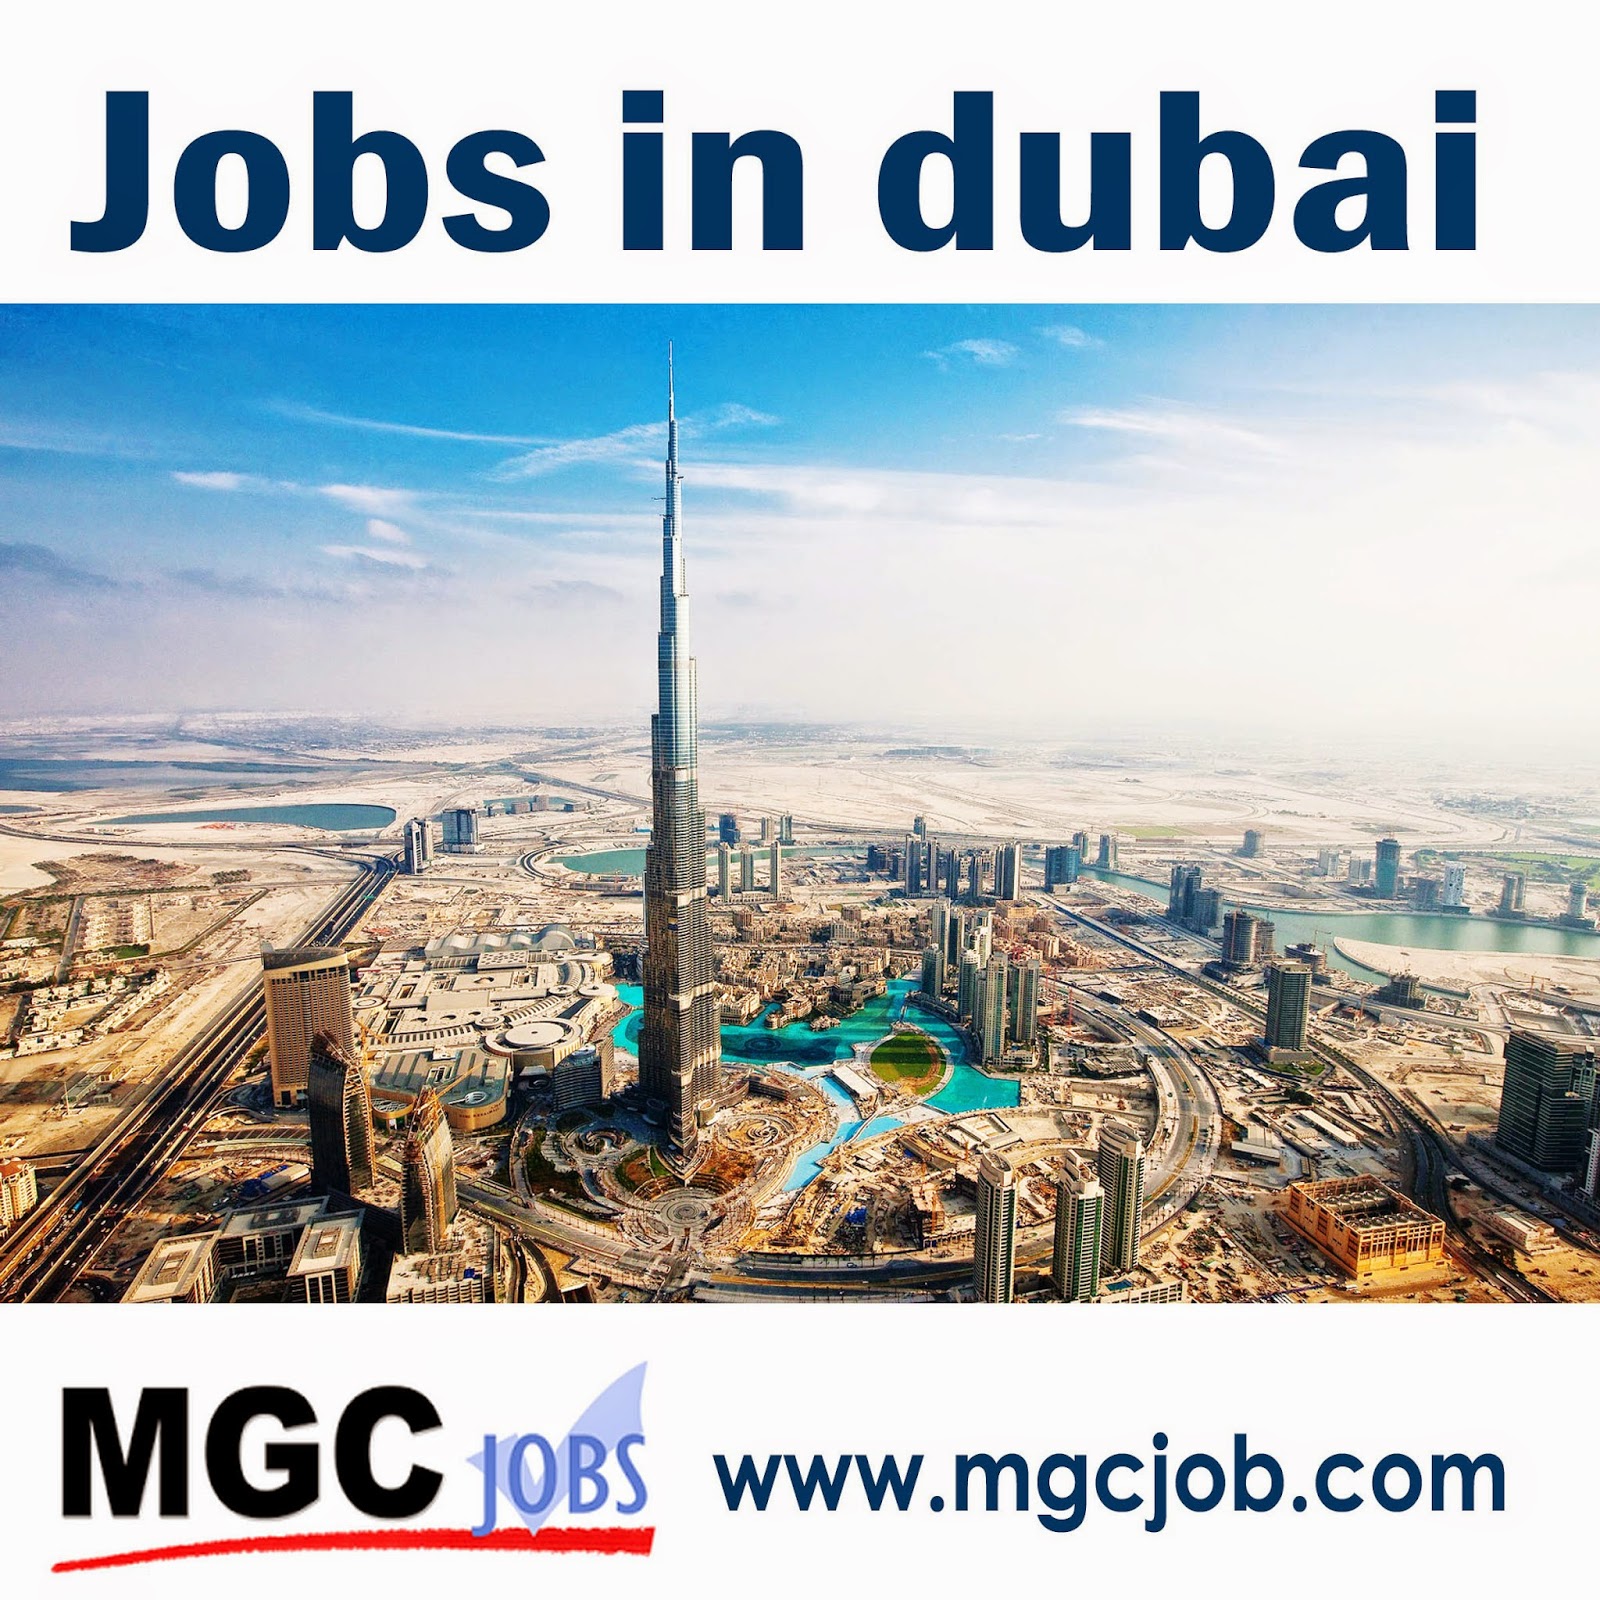   Jobs in Dubai mgc job